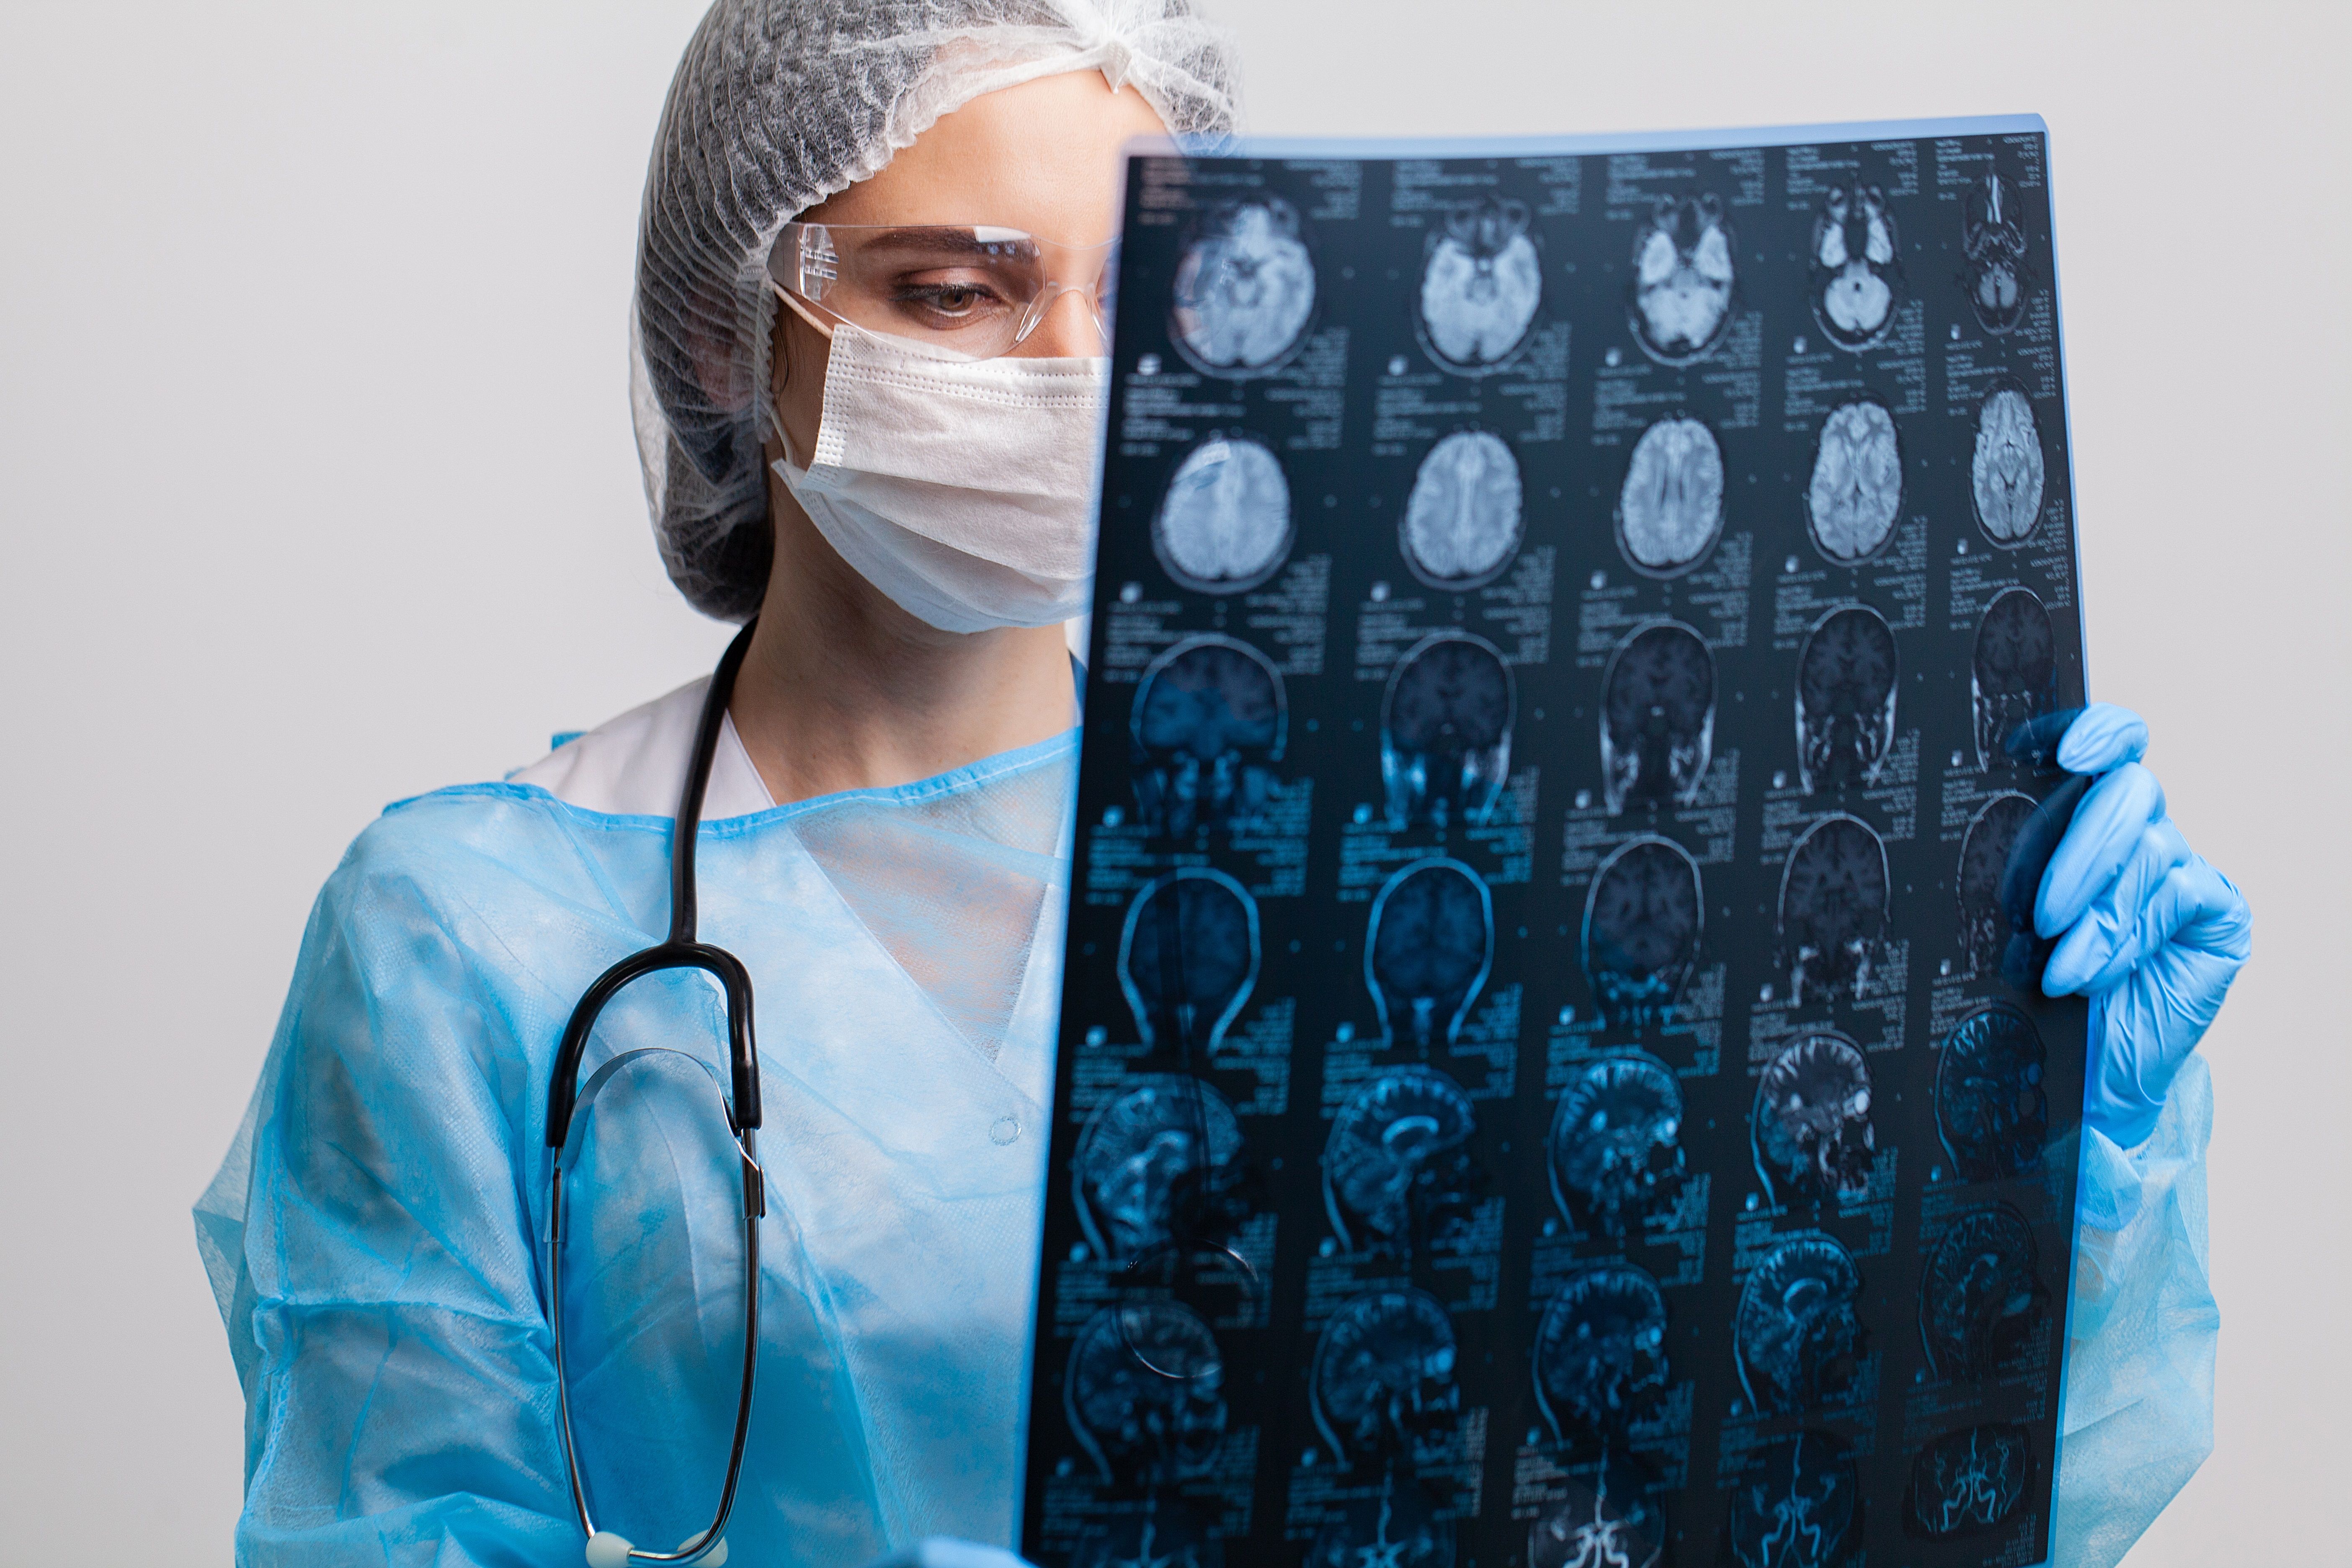 Neurocirurgia: o que trata e quando é indicada